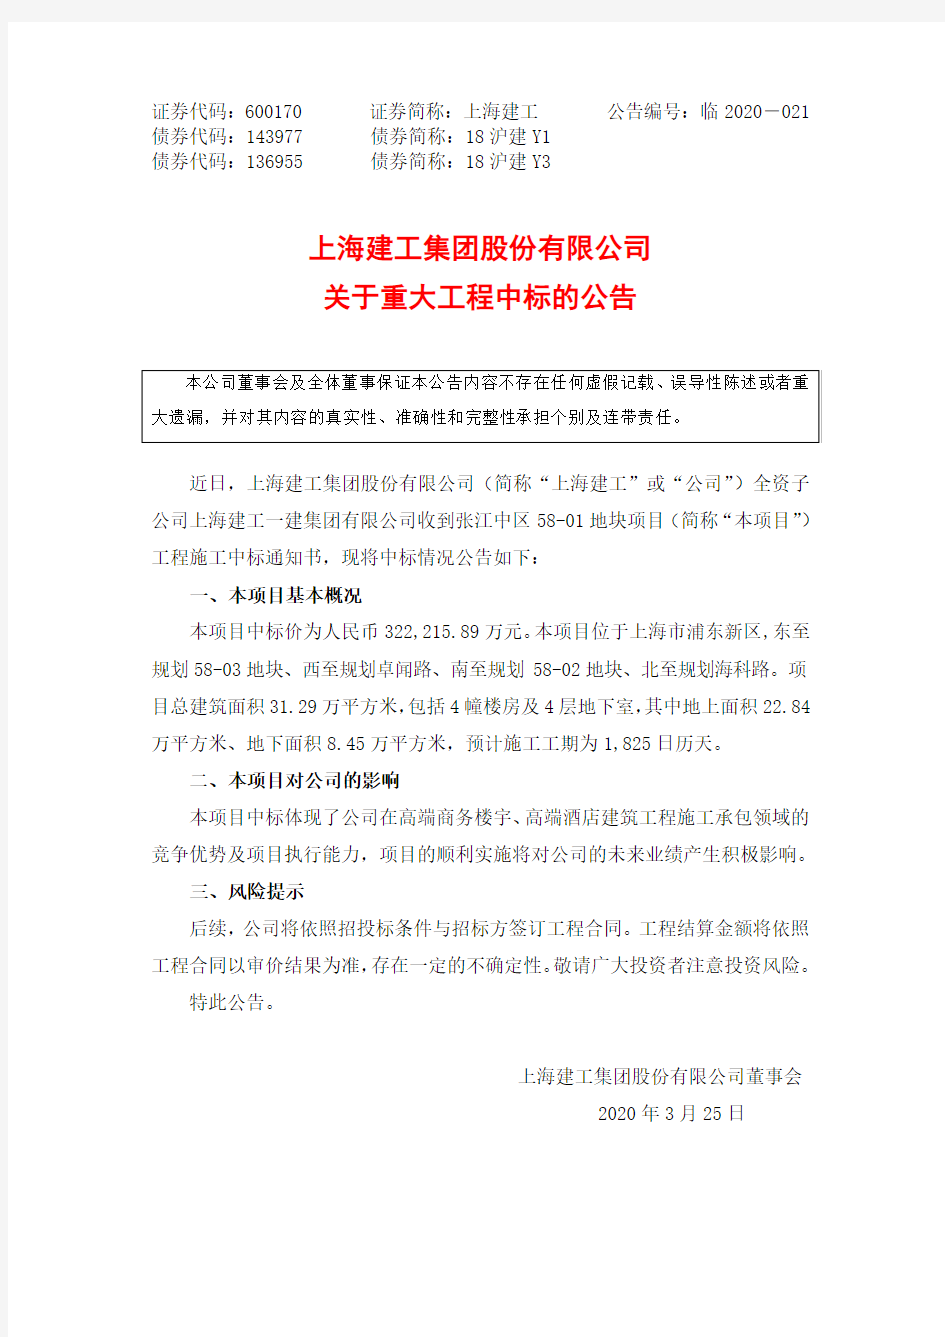 上海建工：关于重大工程中标的公告